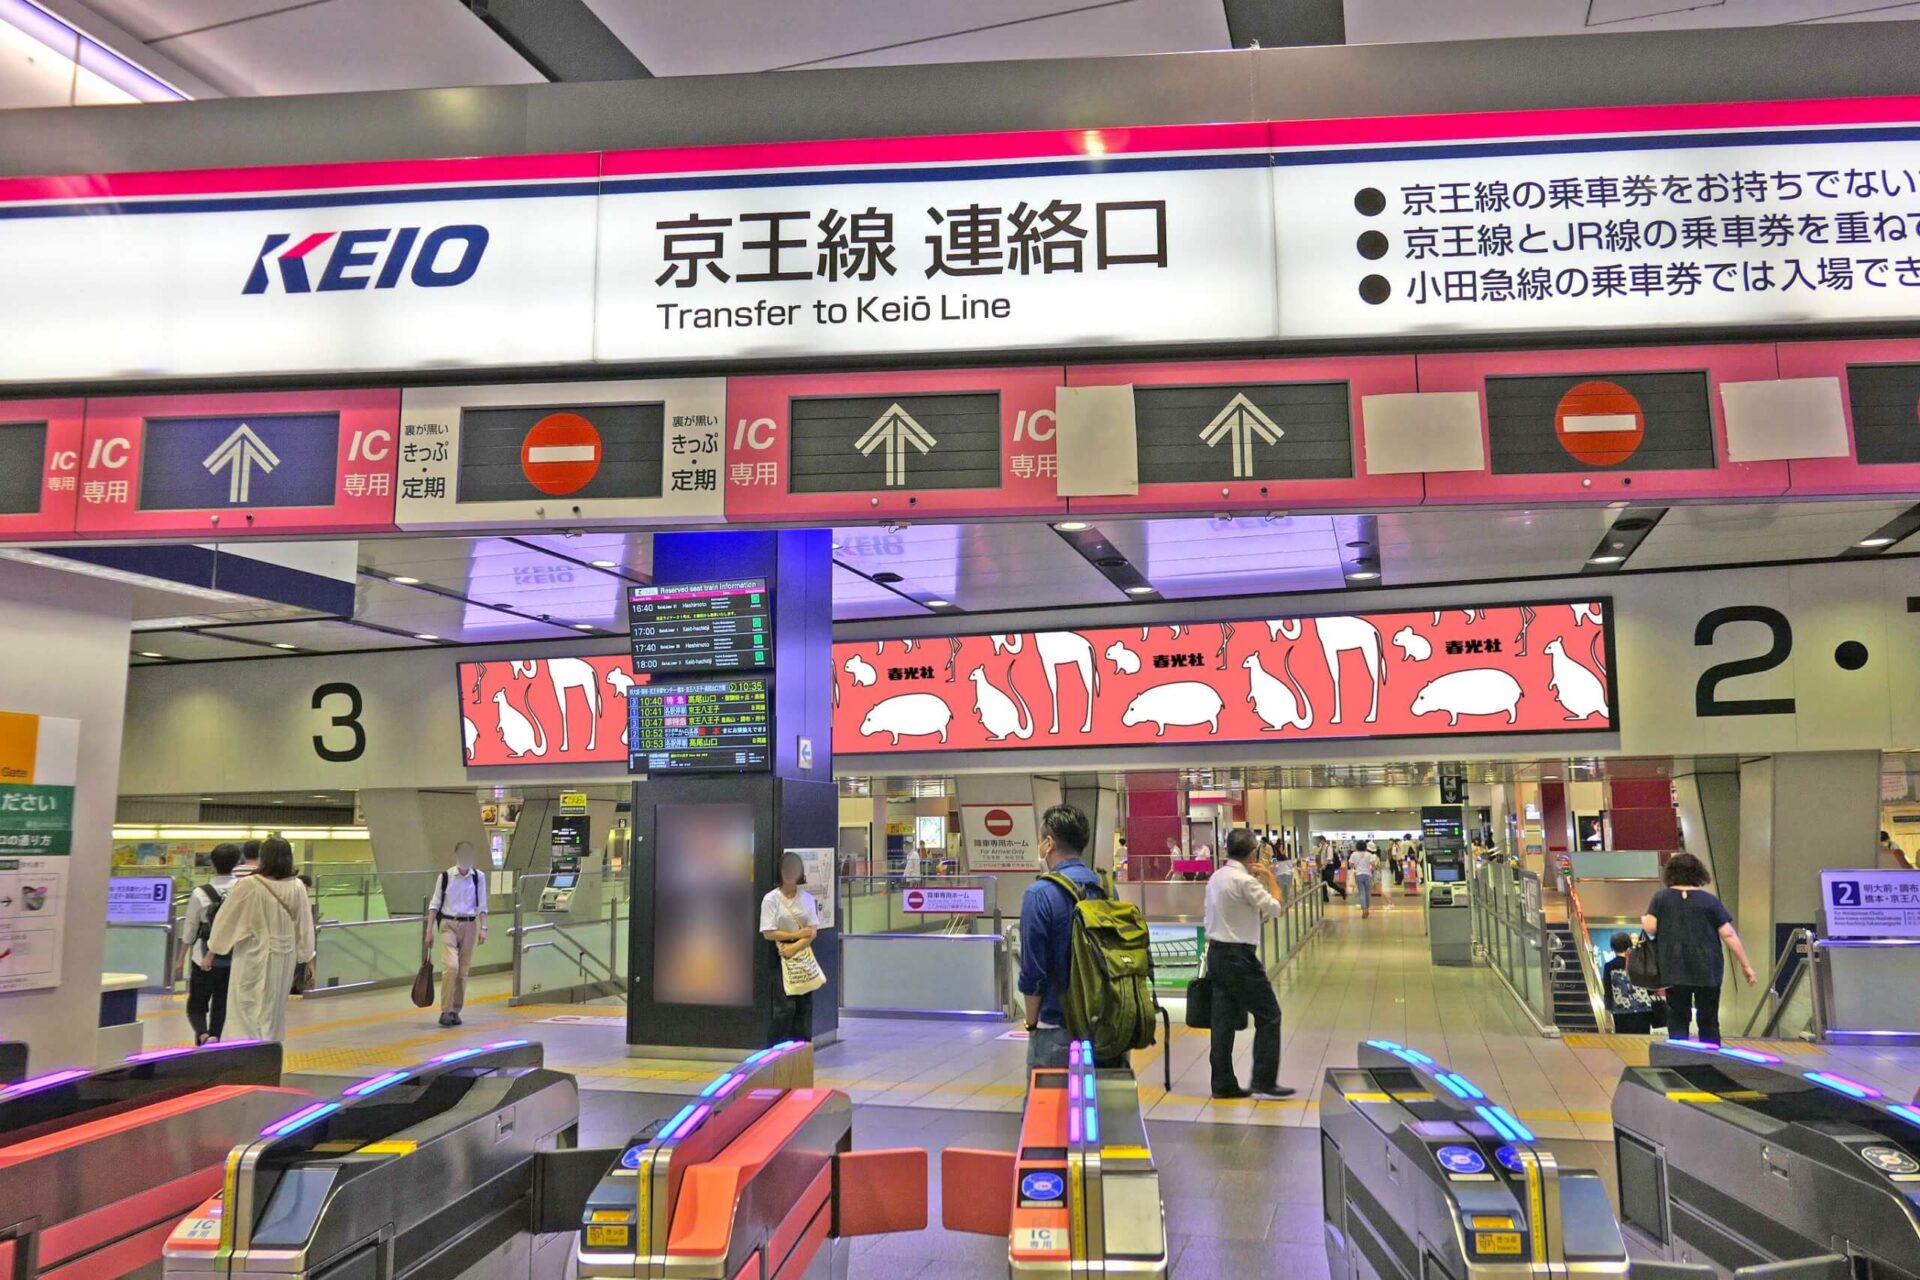 京王新宿駅のX階段上に掲出される、大画面のデジタルサイネージ媒体